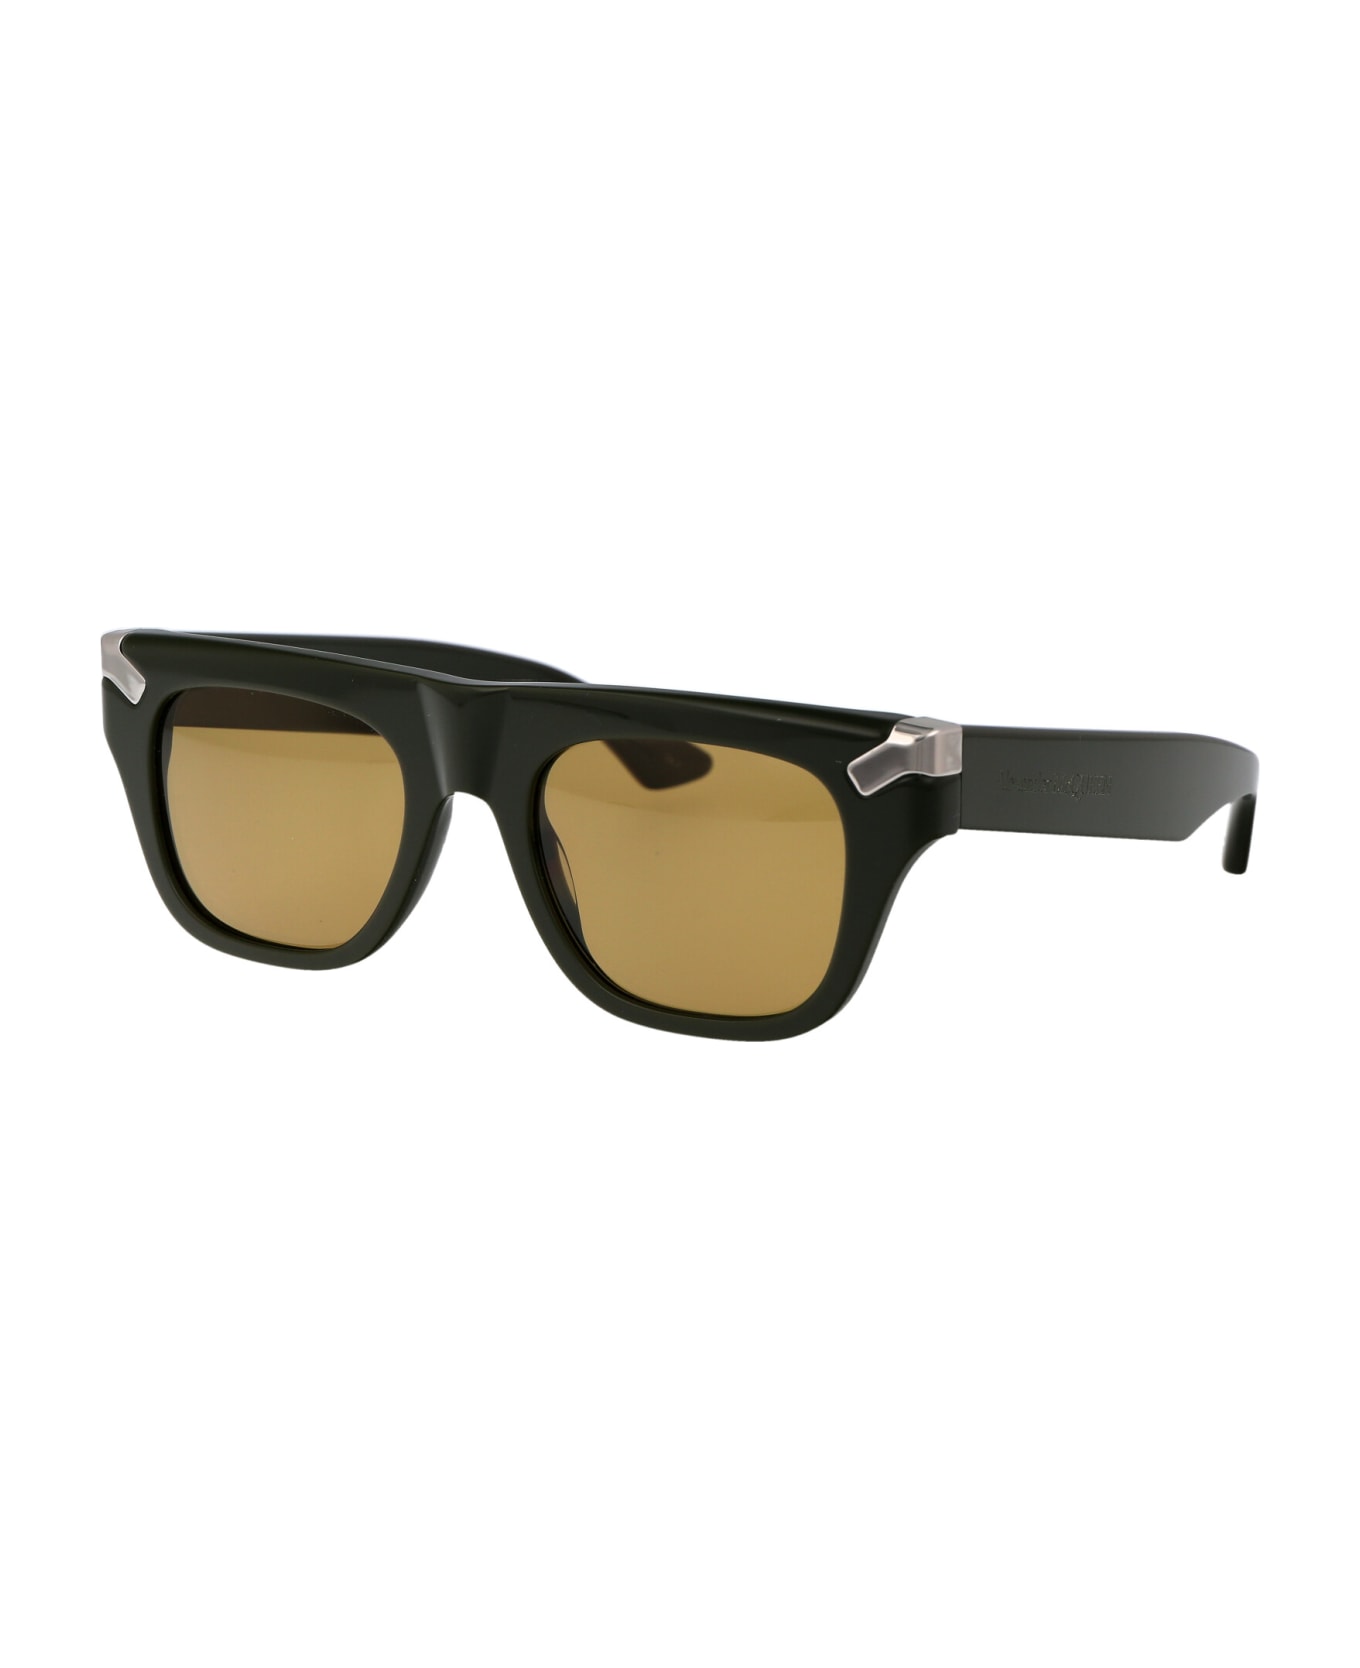 Alexander McQueen Eyewear Am0441s Sunglasses - 004 GREEN GREEN BROWN